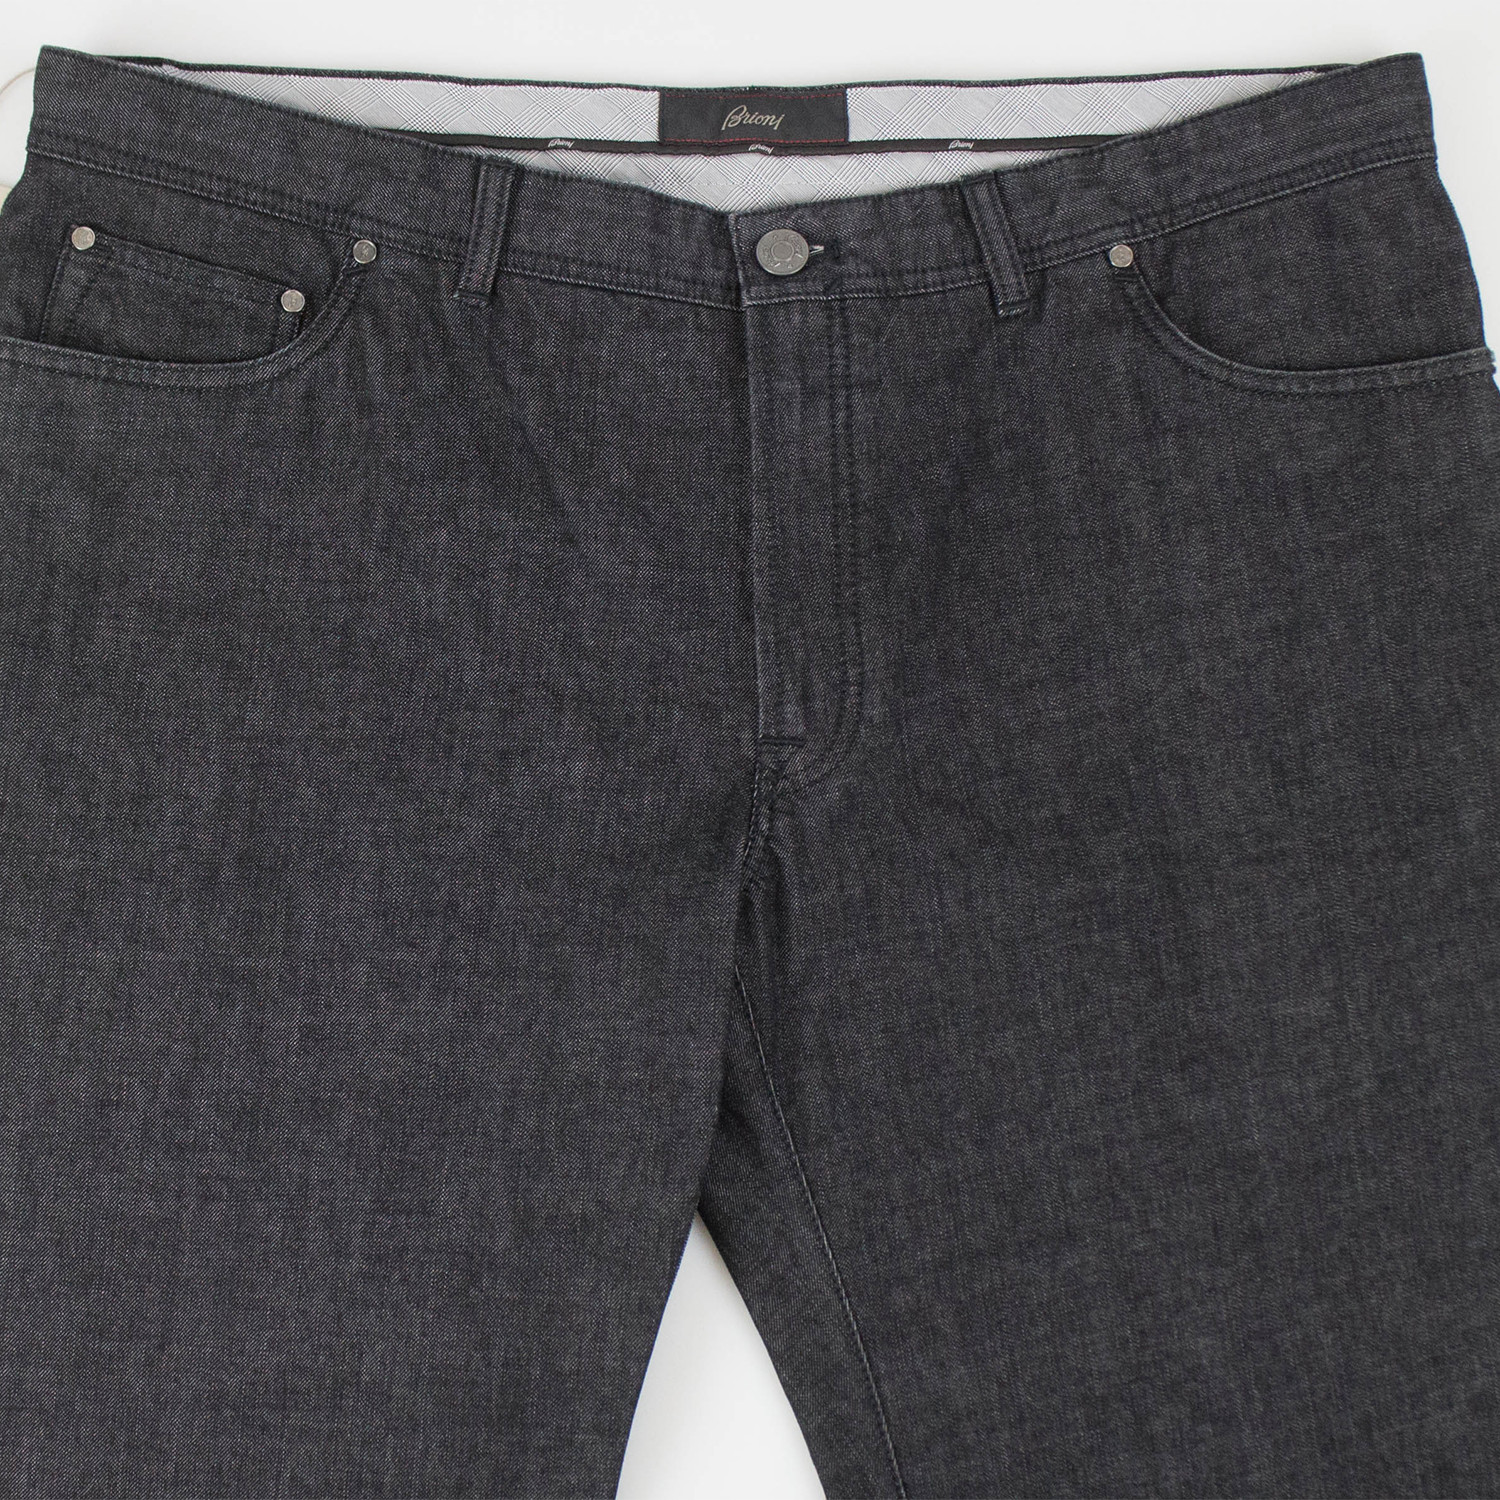 Brioni // Livigno Cotton Denim + Leather Jeans // Gray (60) - Tom Ford ...